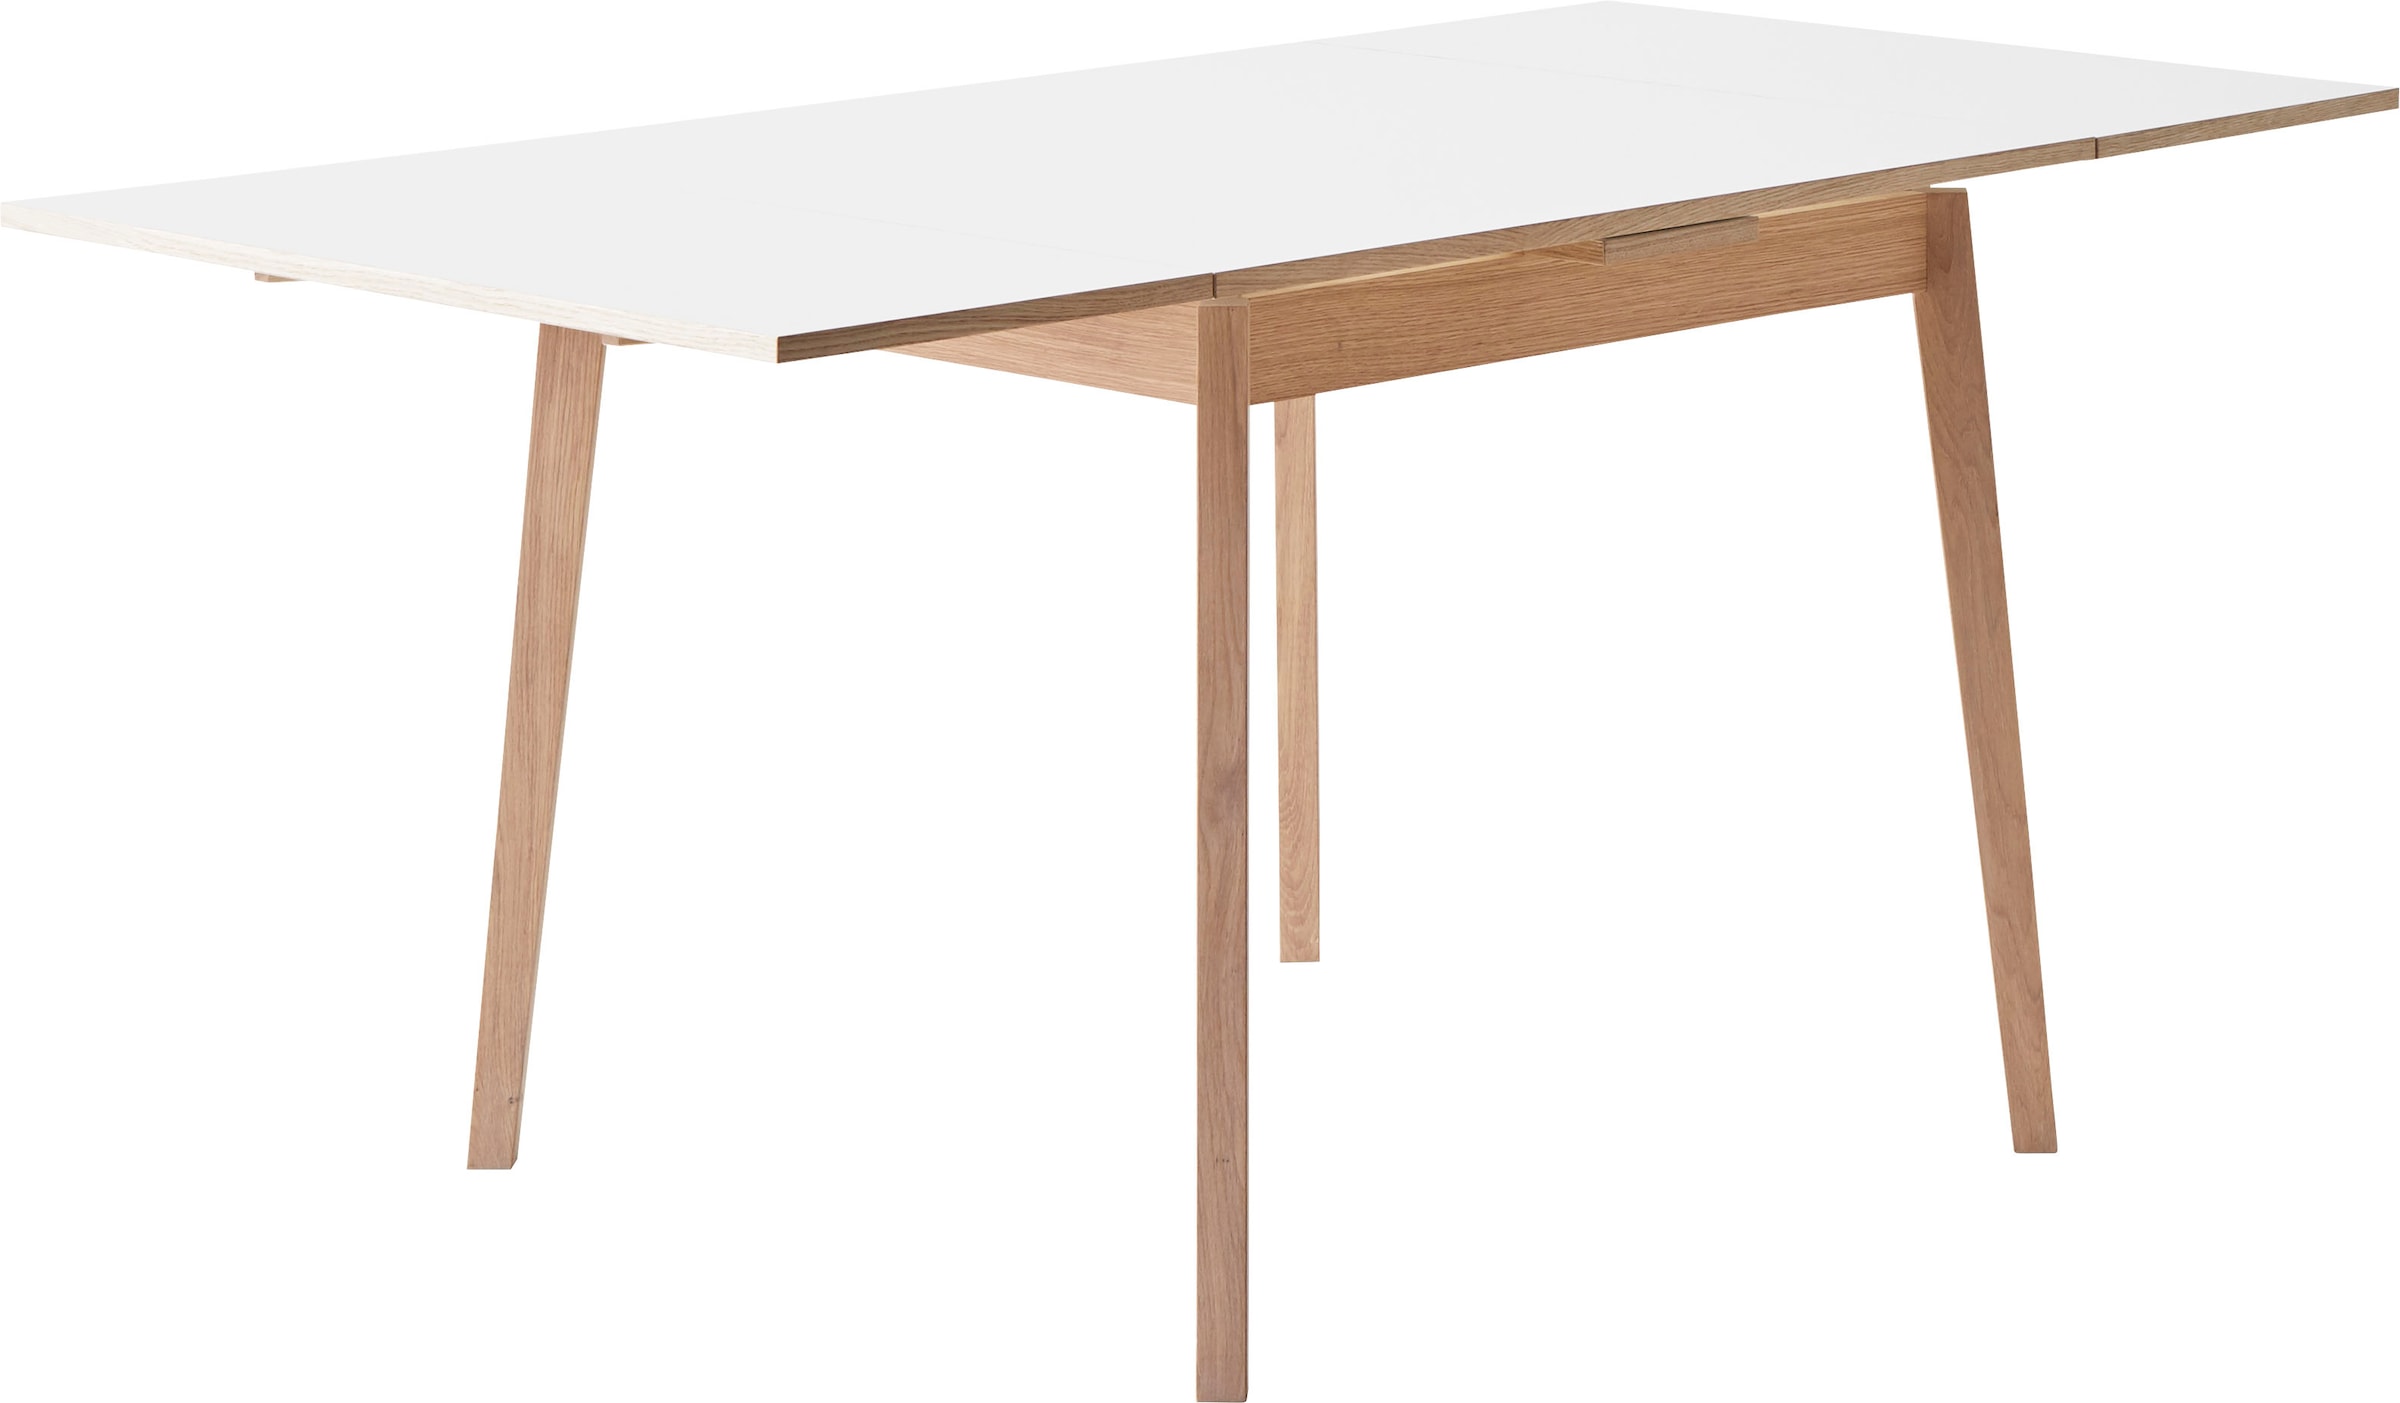 Hammel Furniture Esstisch »Basic Single, schnell innenliegende Einlegeplatten ausziehbar,«, 90(164)x90 cm, Melamin / Massivholz, stabiler dänische Design Tisch